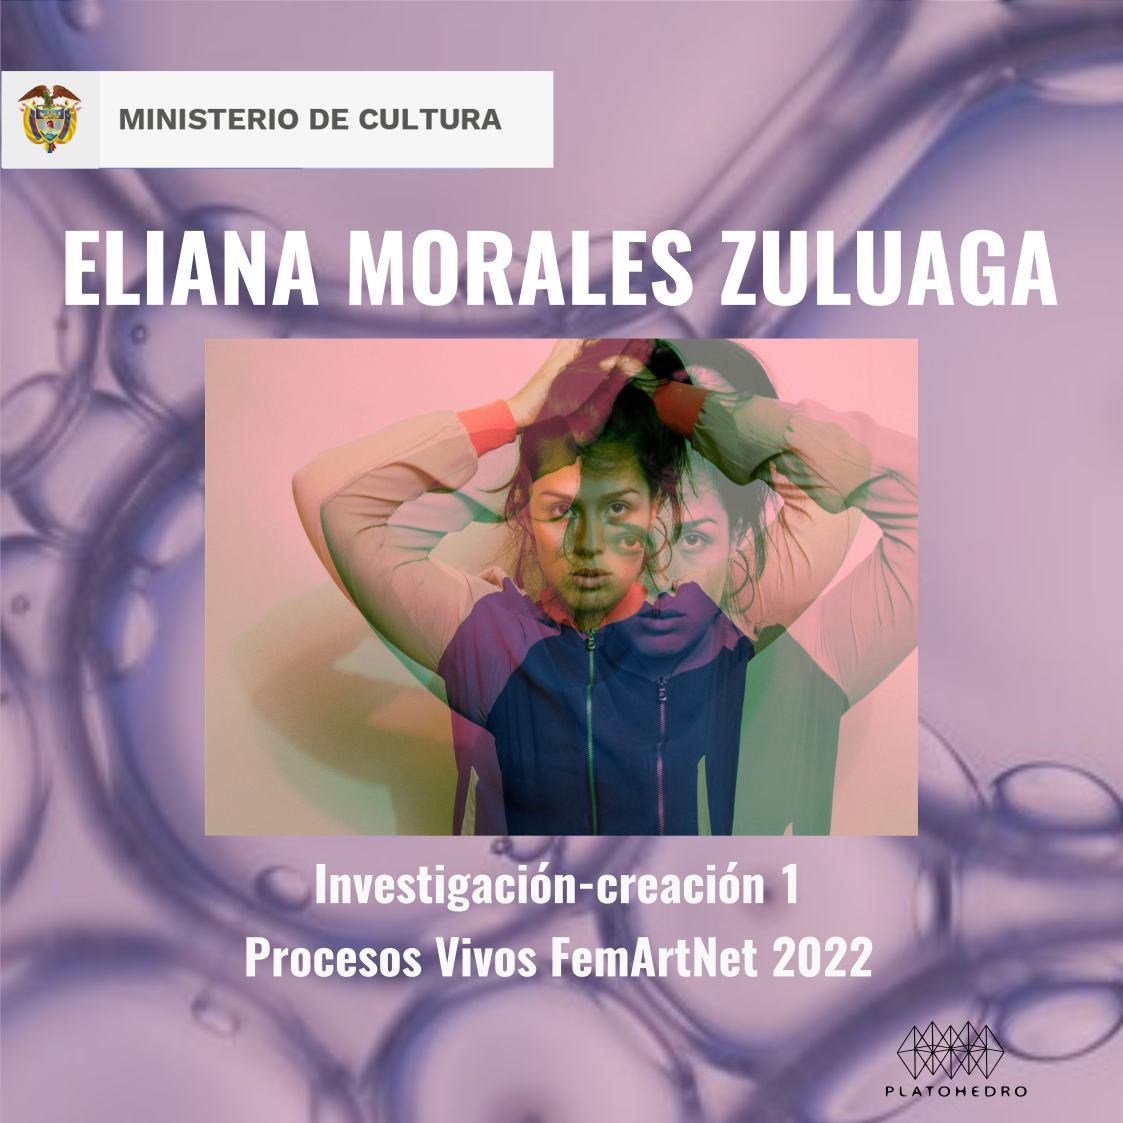 → Eliana Morales